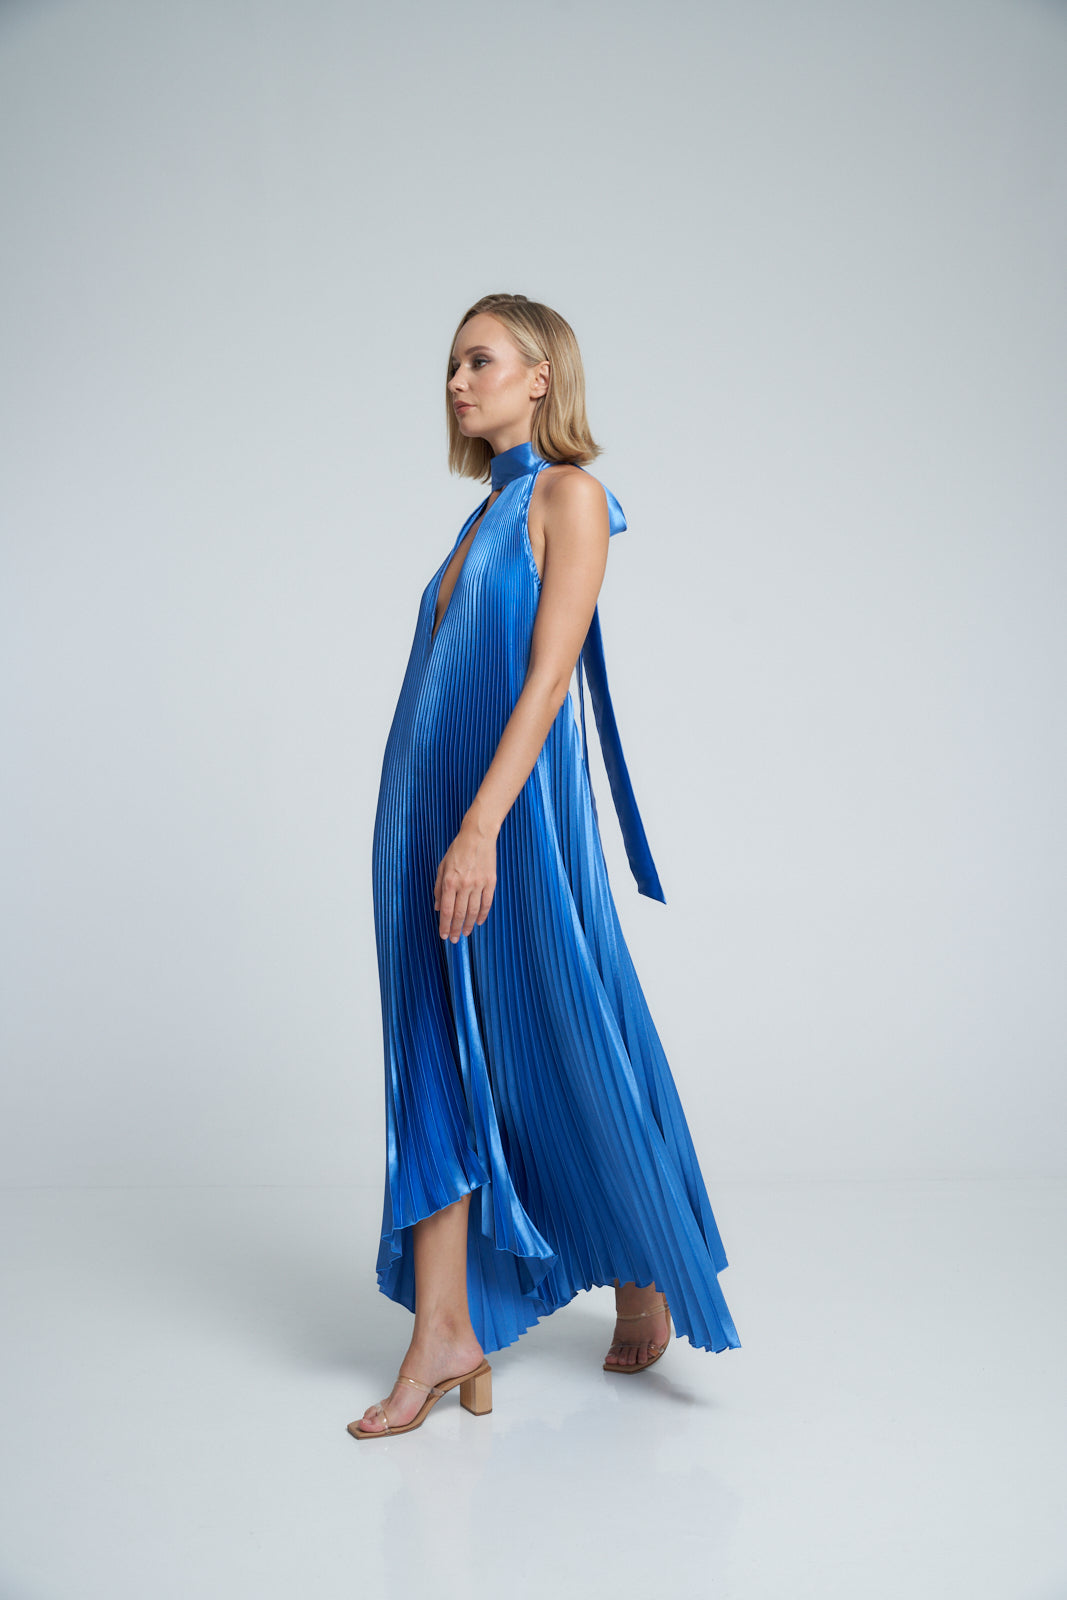 Opera Gown - Mediterranean Blue